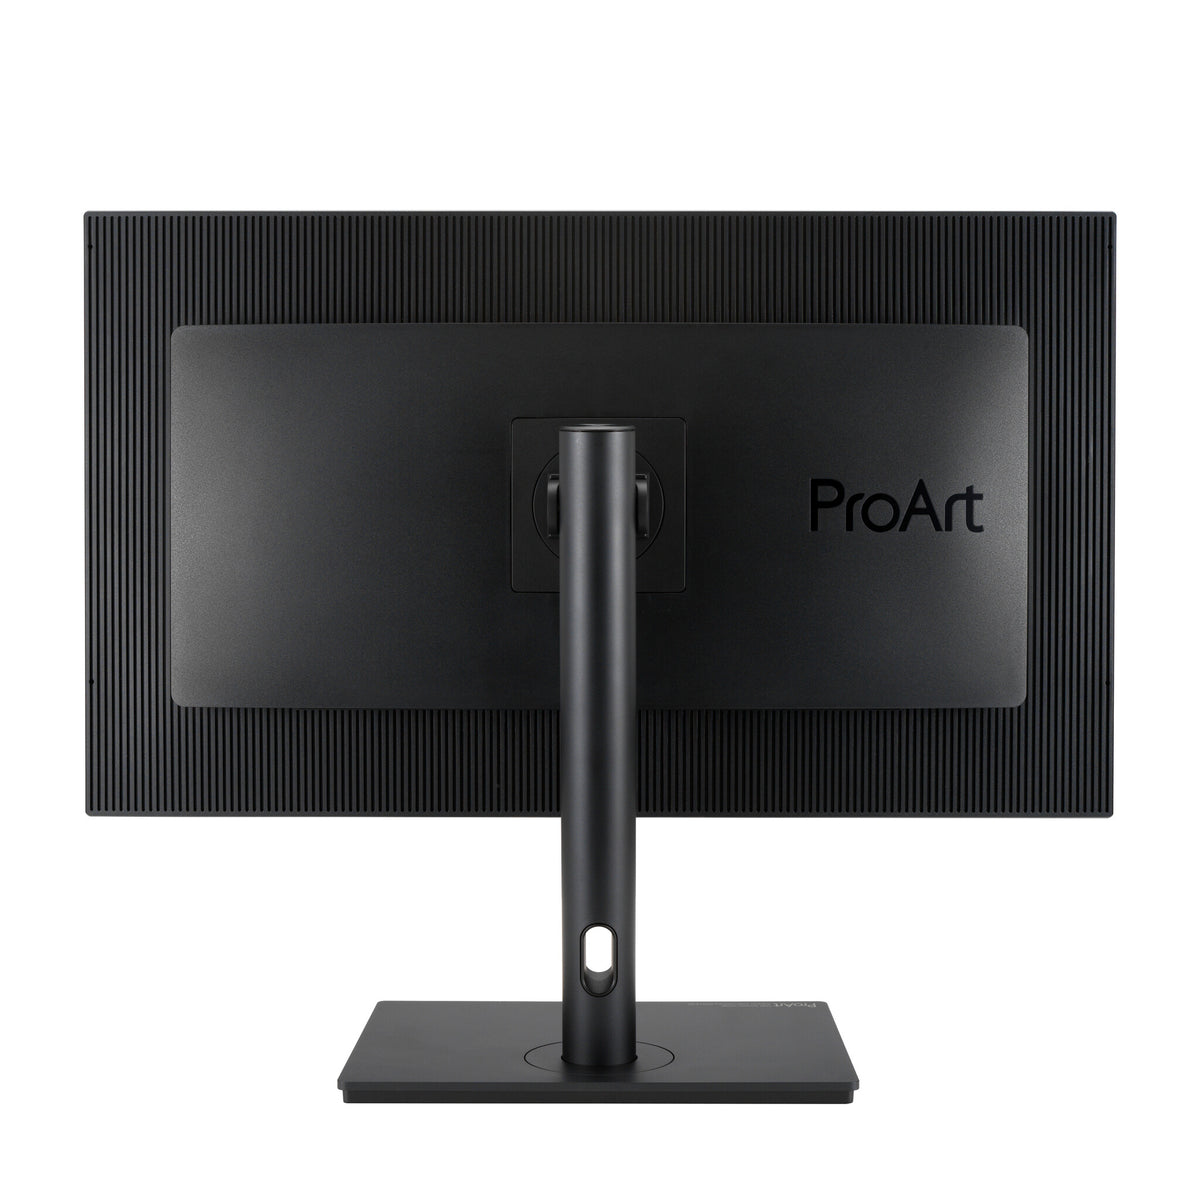 ASUS ProArt PA329CV - 81.3 cm (32&quot;) - 3840 x 2160 pixels 4K Ultra HD Monitor